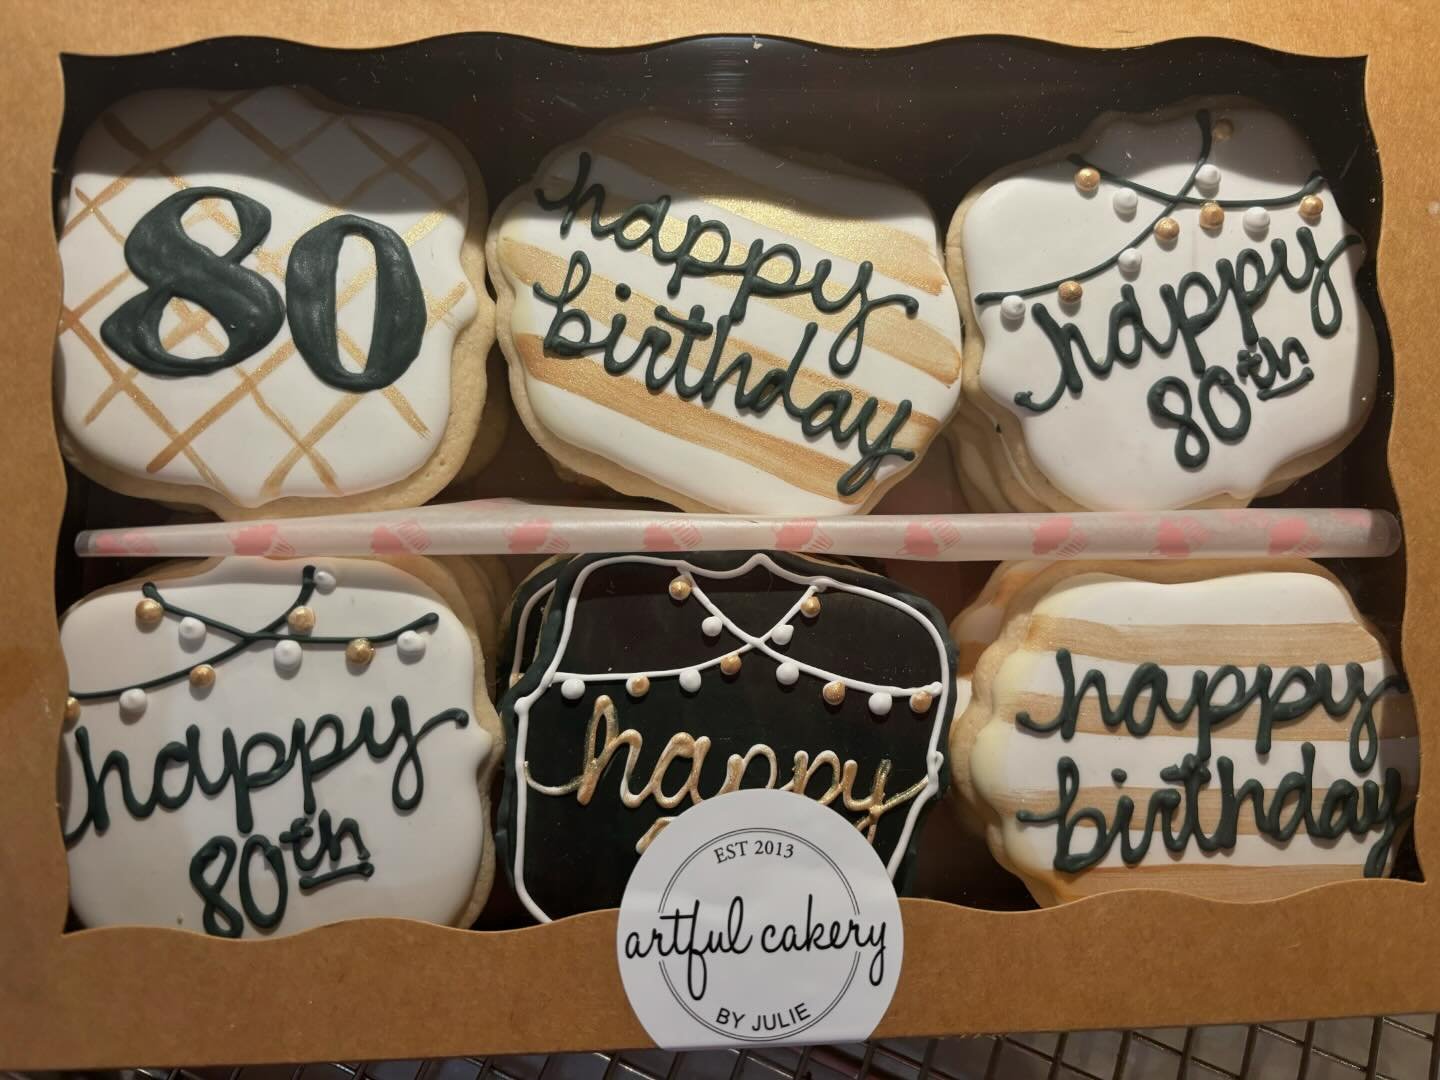 80 cookies for an 80th birthday! 
.
.
.
.
.
.
#decoratedsugarcookies #cookiesofinstagram #artfulcakerybyjulie  #birthdays #birthdaycookies #80thbirthday #party